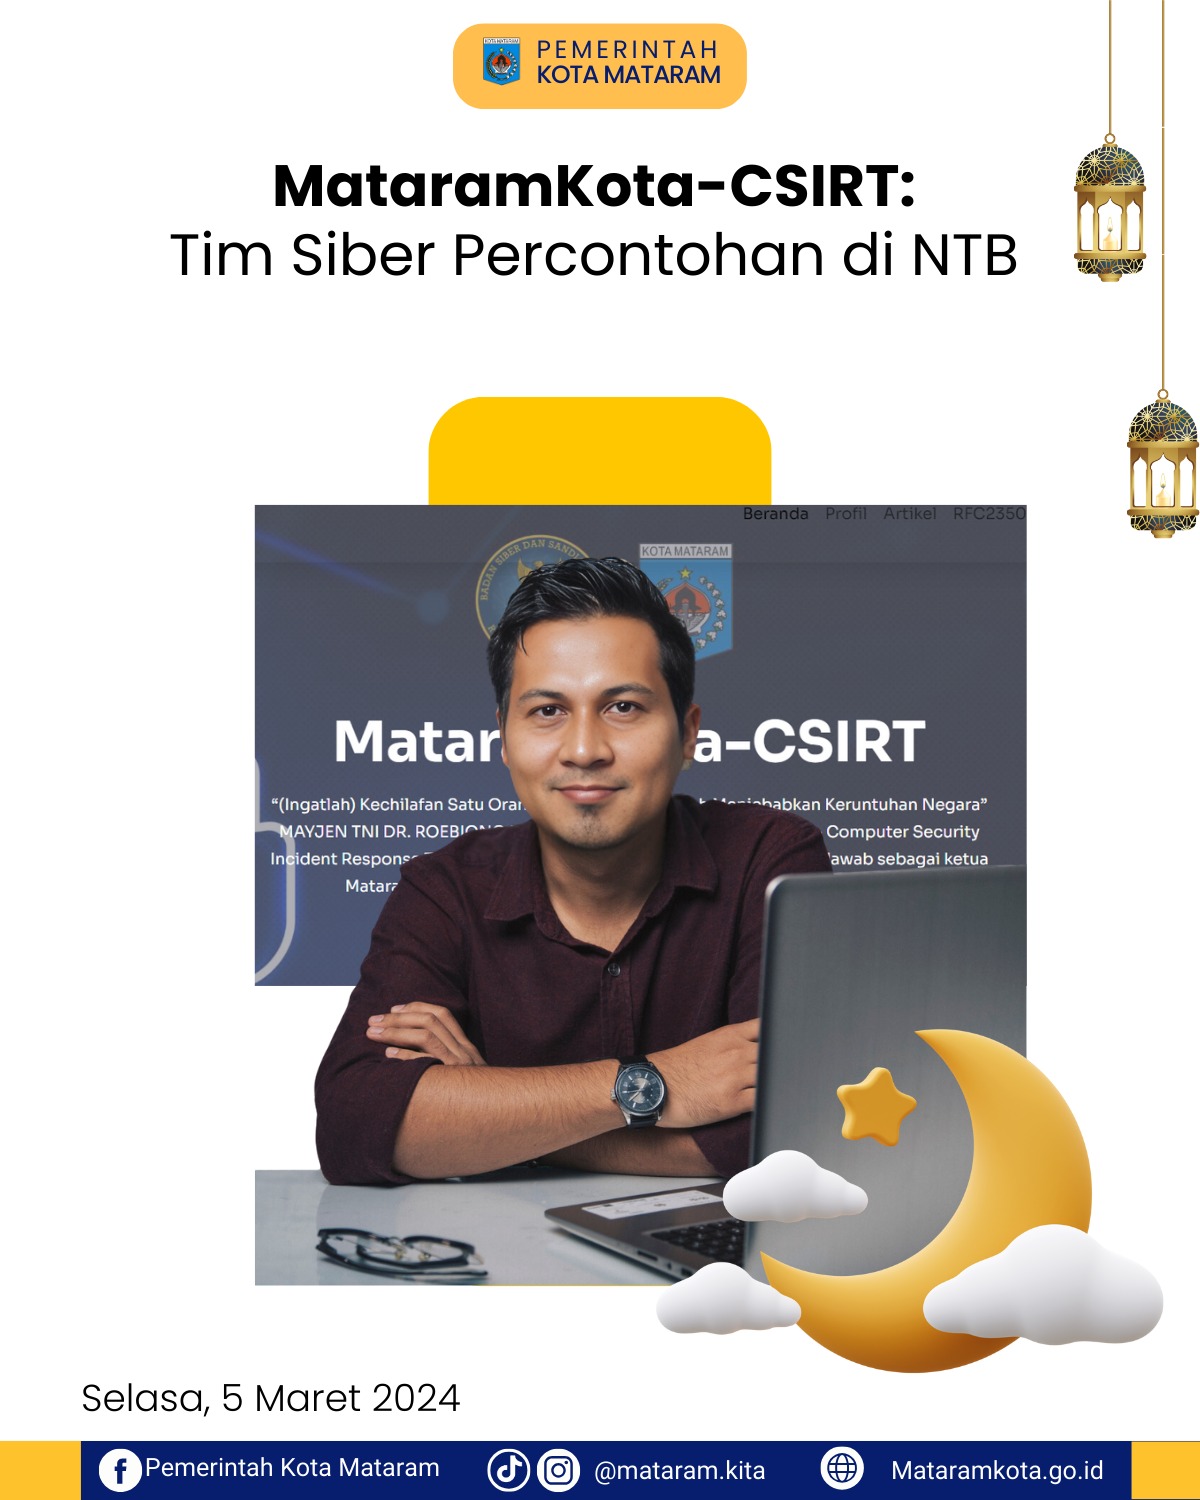 MataramKota-CSIRT: Tim Siber Percontohan di NTB